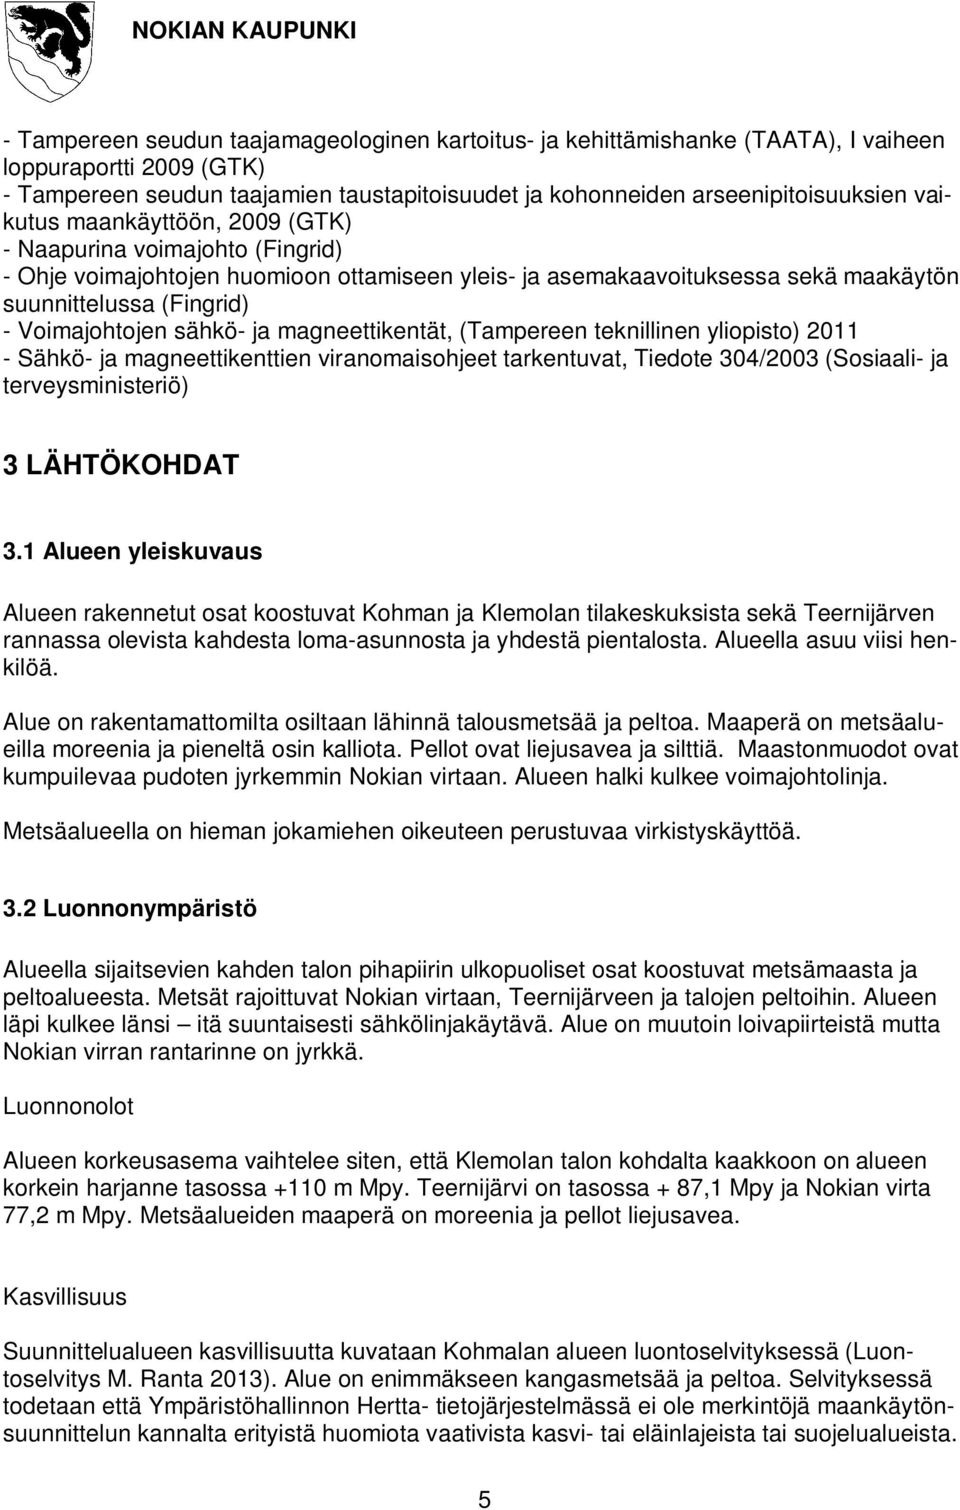 sähkö- ja magneettikentät, (Tampereen teknillinen yliopisto) 2011 - Sähkö- ja magneettikenttien viranomaisohjeet tarkentuvat, Tiedote 304/2003 (Sosiaali- ja terveysministeriö) 3 LÄHTÖKOHDAT 3.